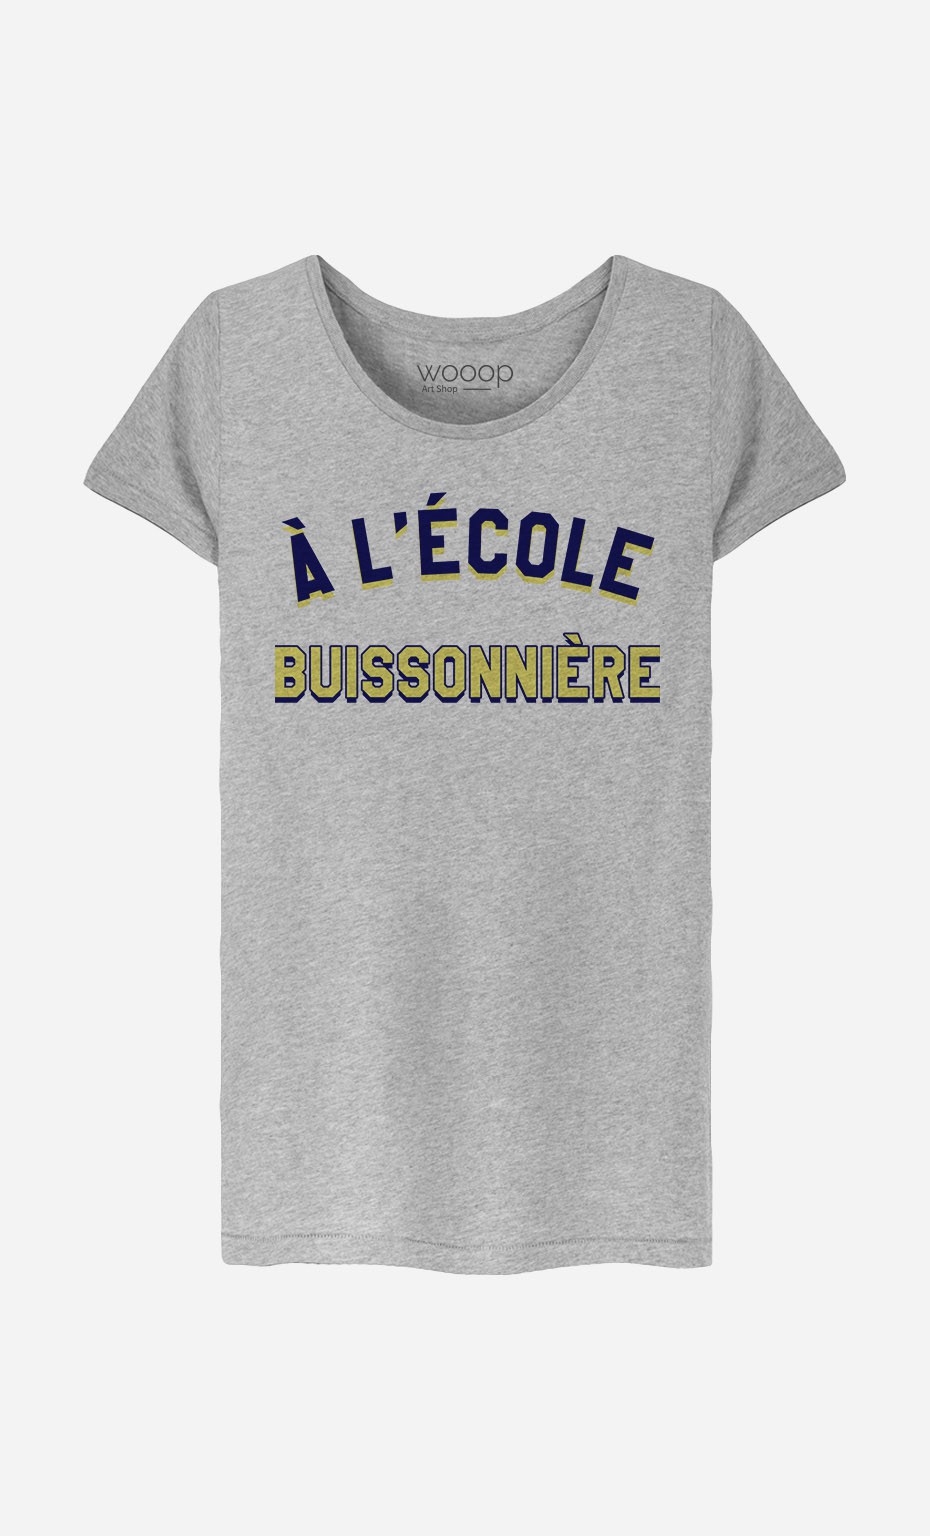 T-Shirt Femme À L’École Buissonnière